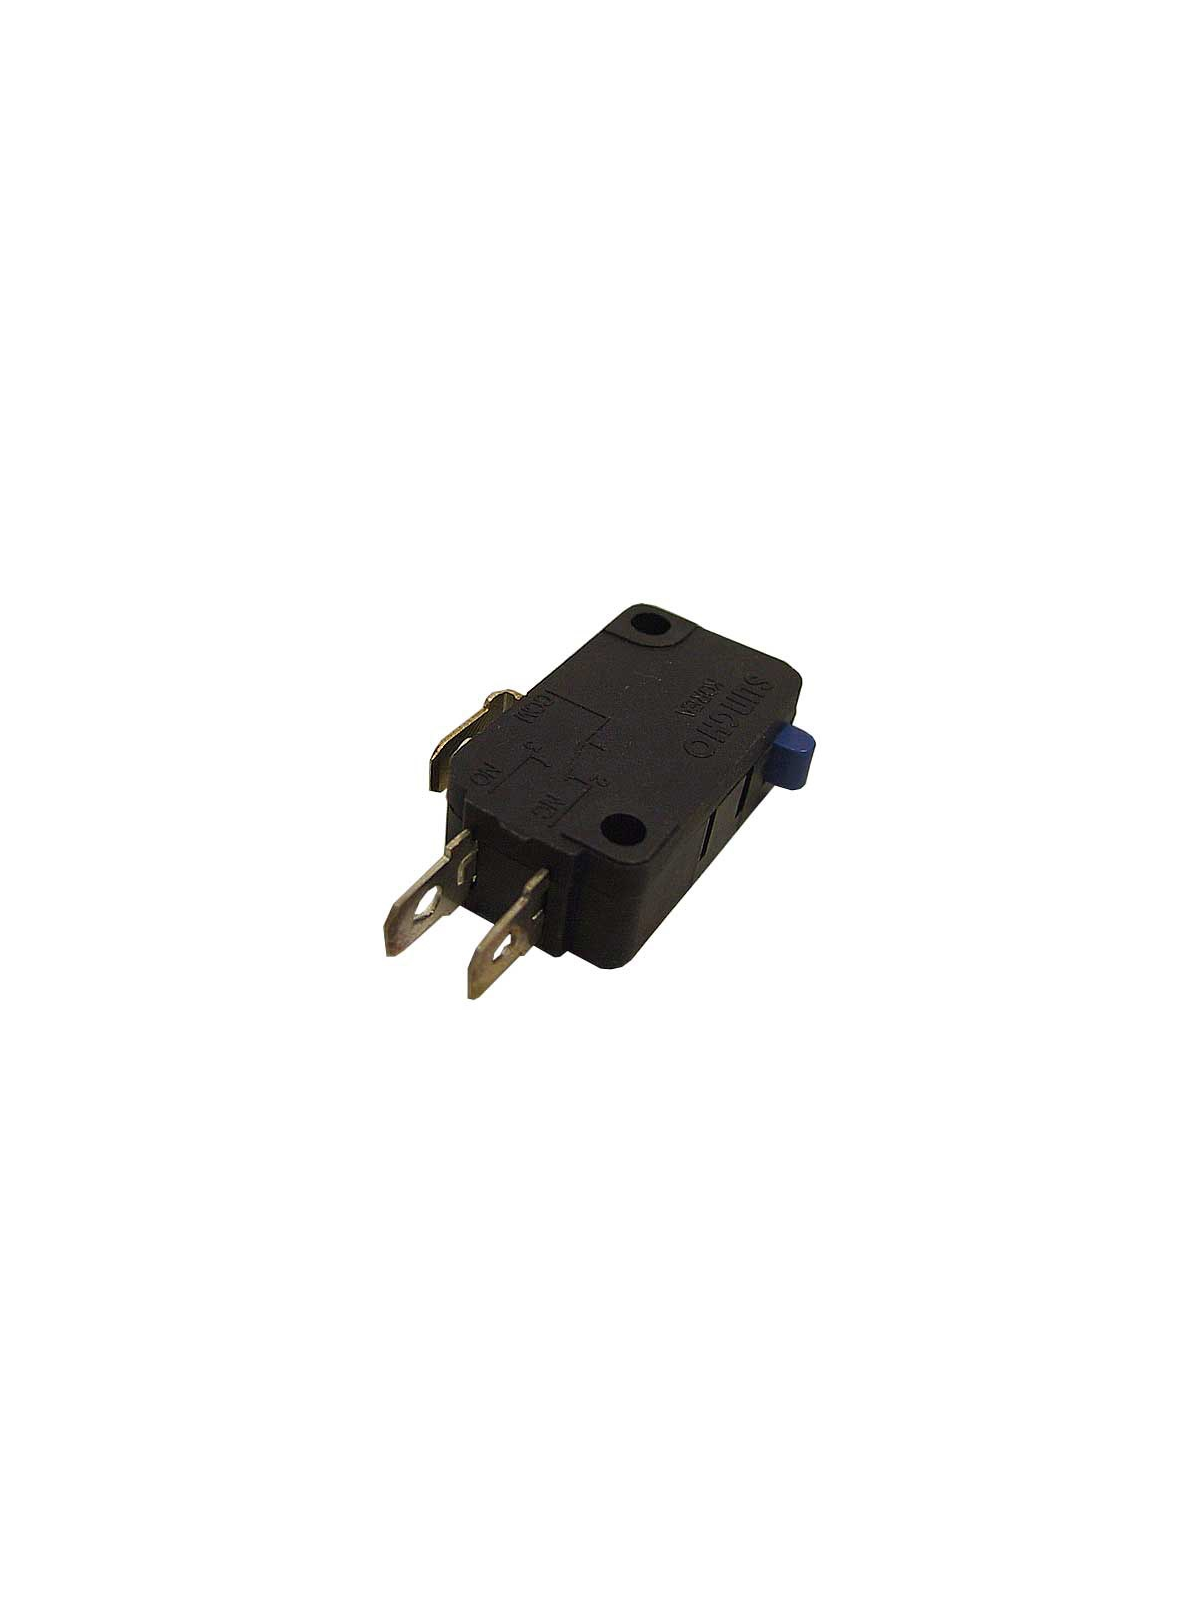 Interrupteur de porte Samsung CE117 / CE137 / MS23F301EAW - Micro-ondes